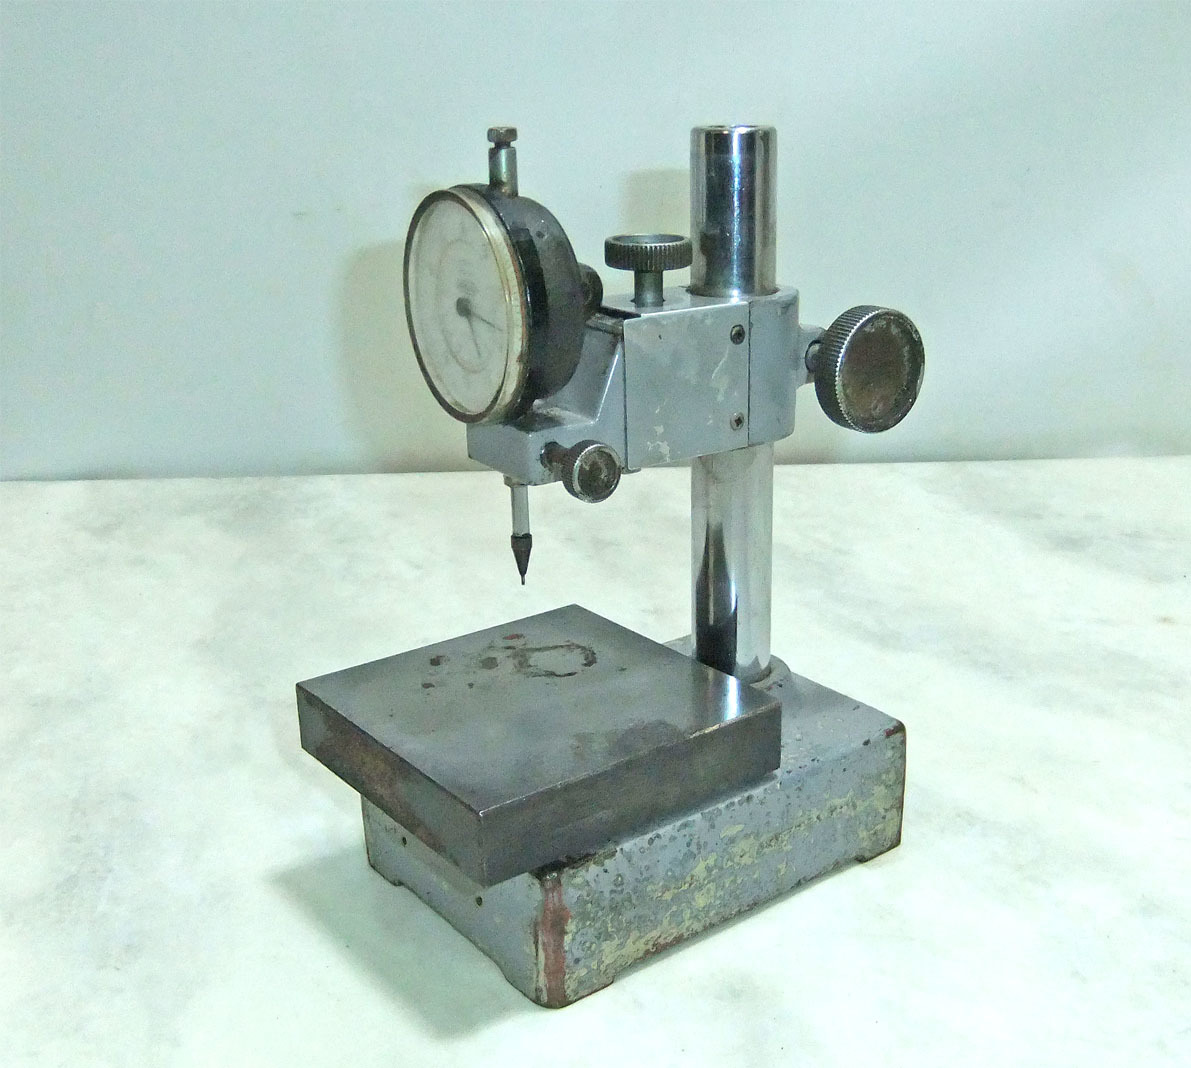 CITIZEN 2A-104 dial труба мера Dial Gage Stand 0.01-10mm измерение оборудование [ рабочее состояние подтверждено ] б/у товар 